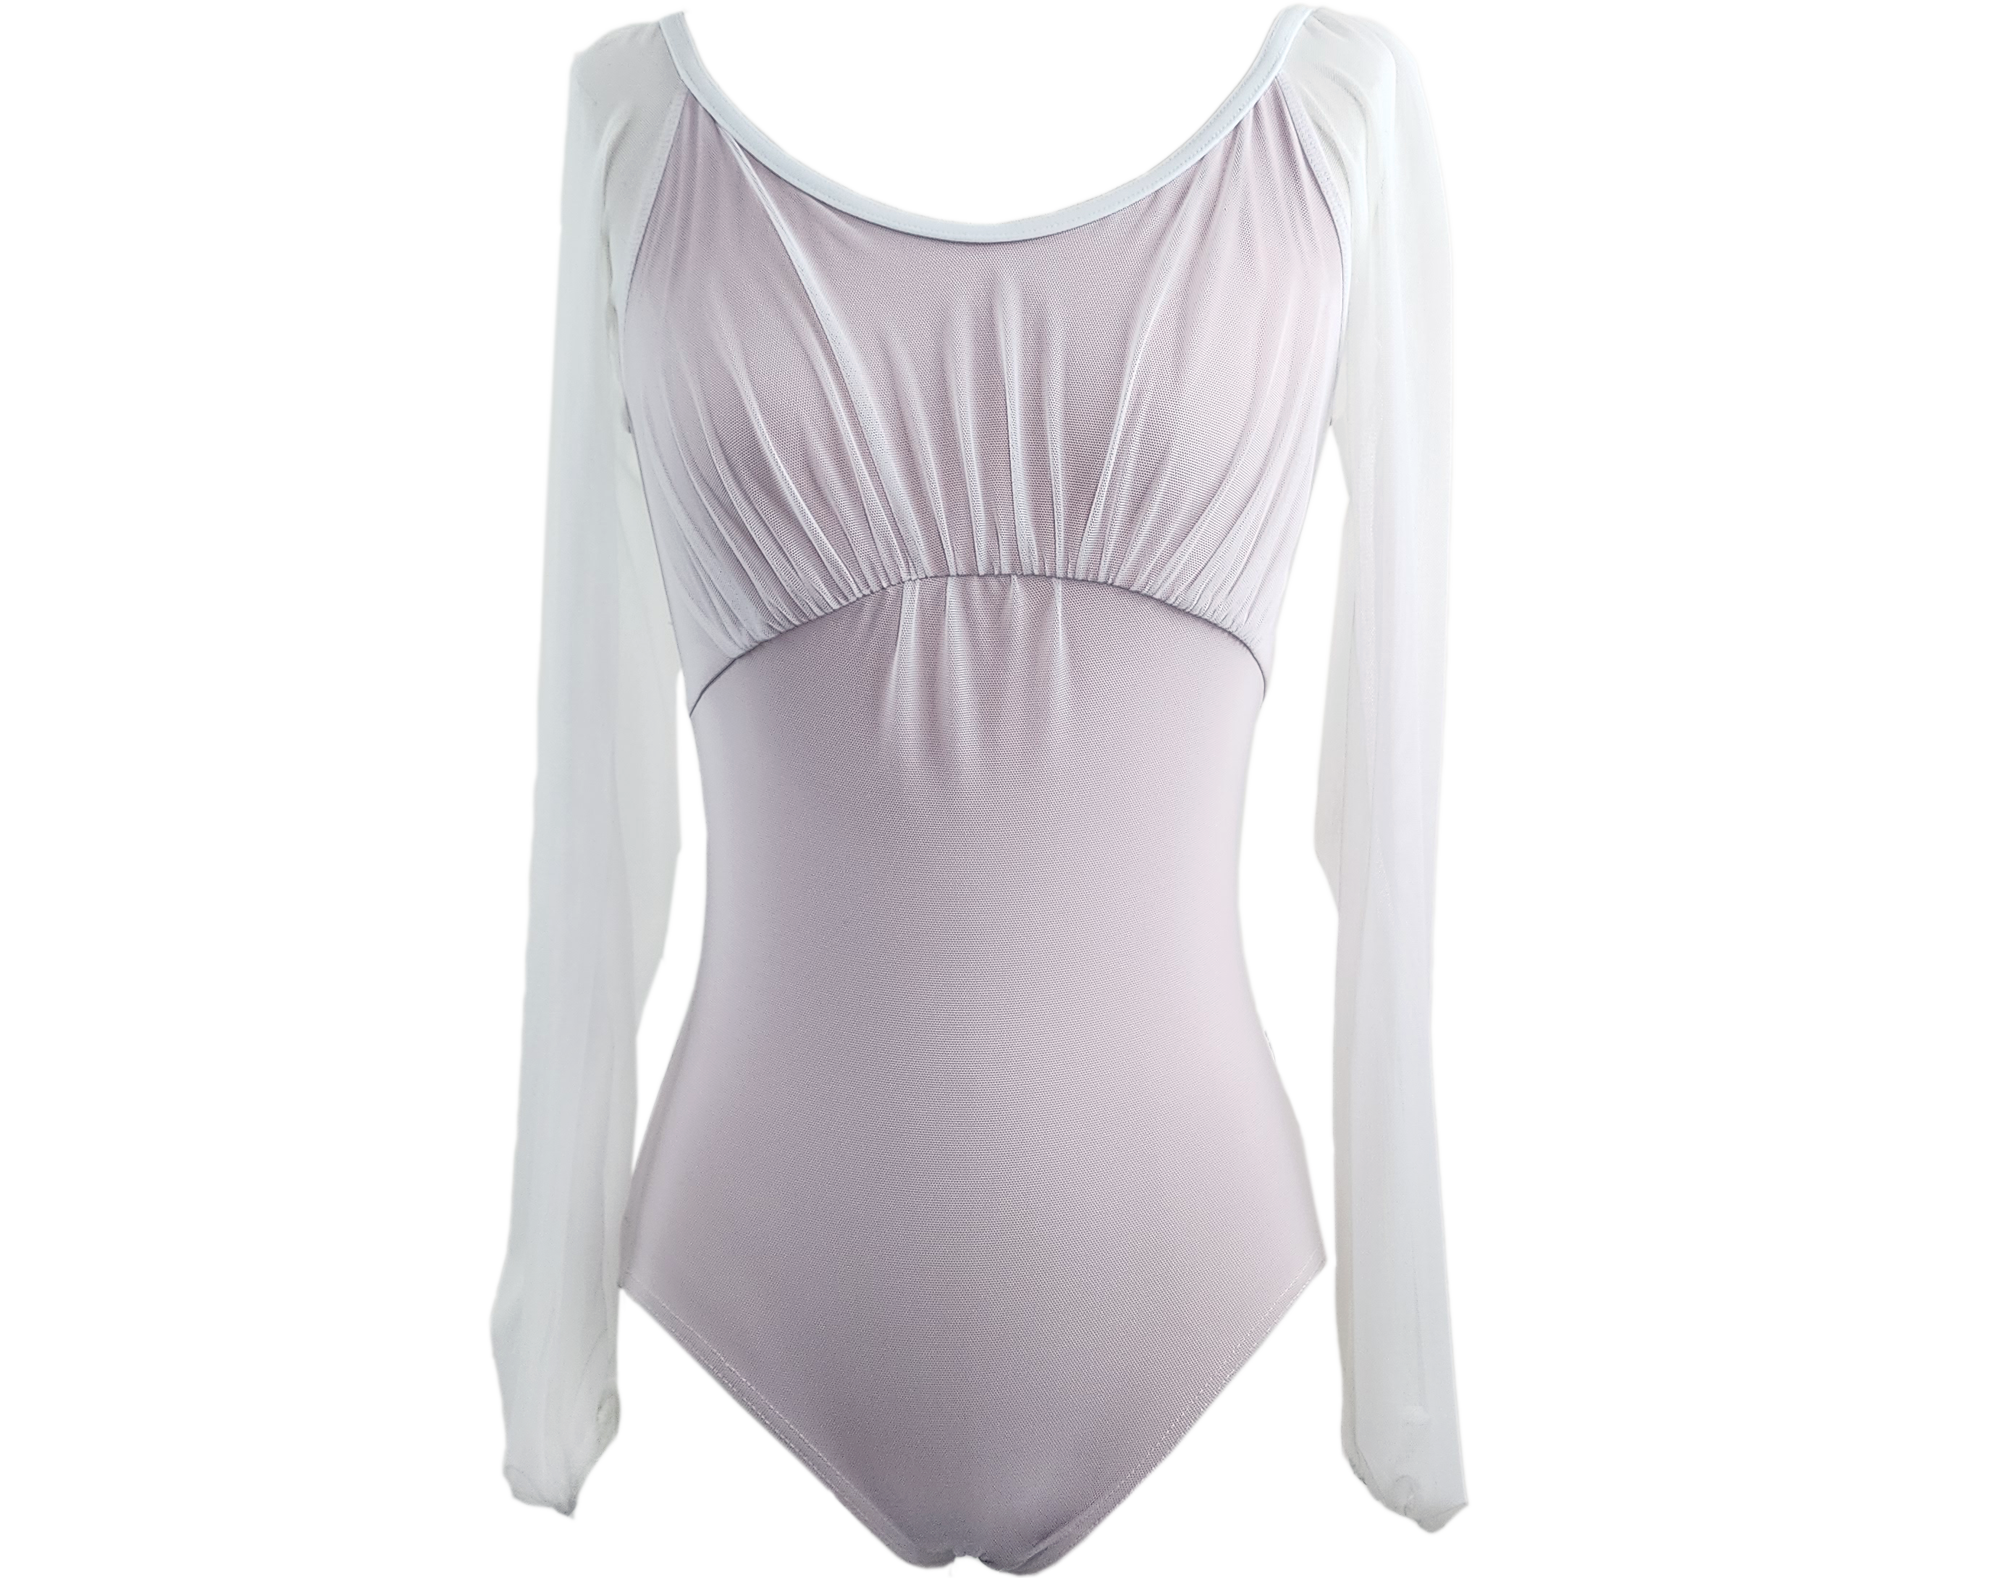 Eileen Sleeve Ballet Leotard - Dusty Pink & White Mesh